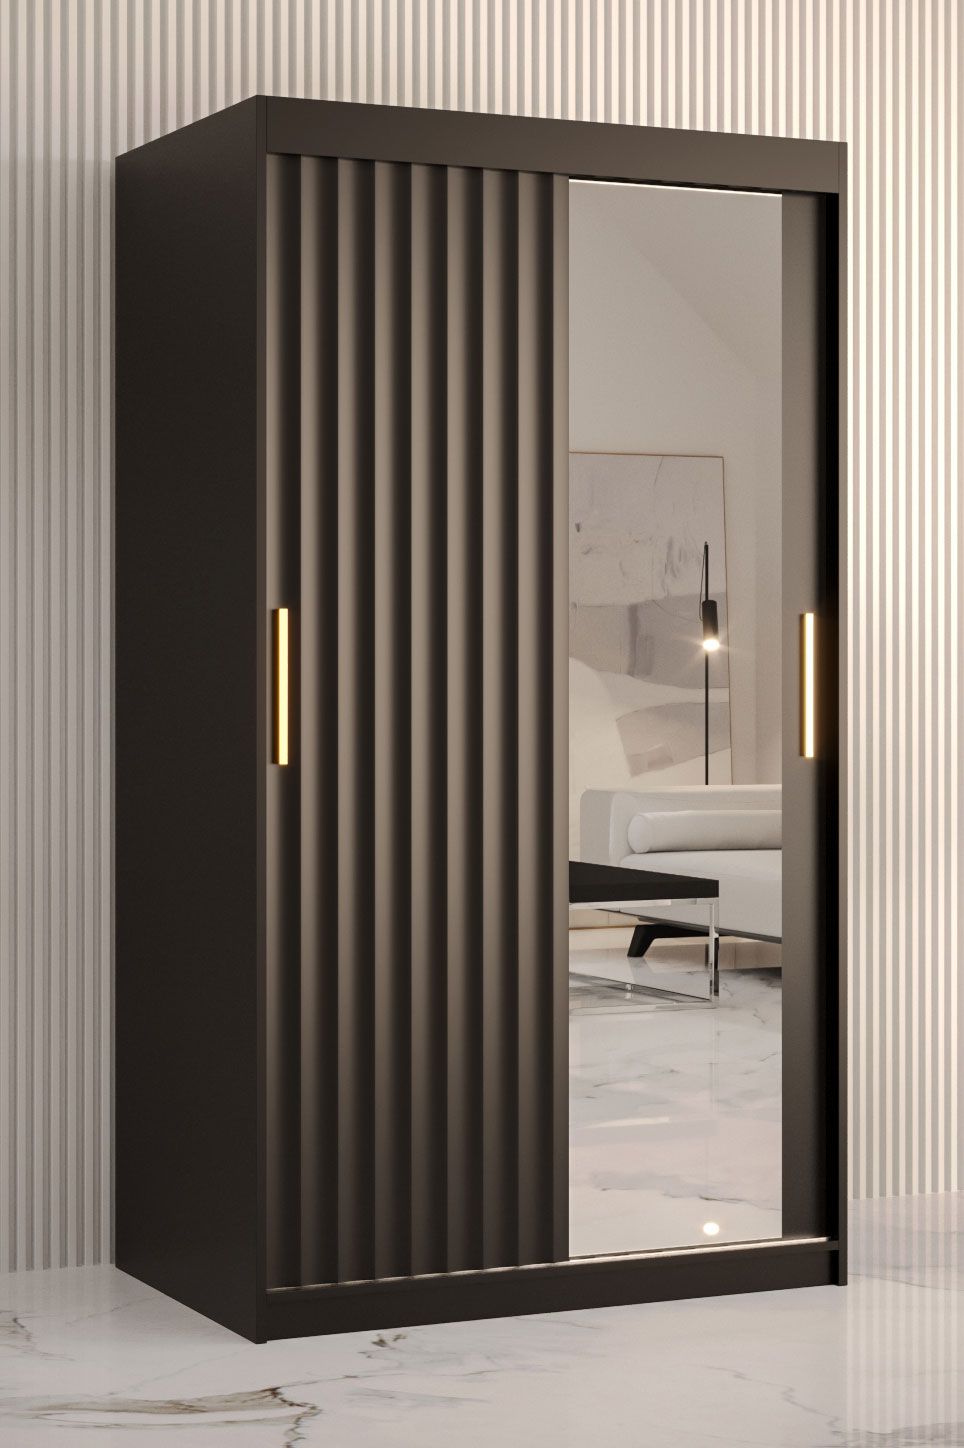 Eenvoudige kledingkast met één deur met spiegel Balmenhorn 76, kleur: mat zwart - afmetingen: 200 x 100 x 62 cm (H x B x D), met voldoende opbergruimte